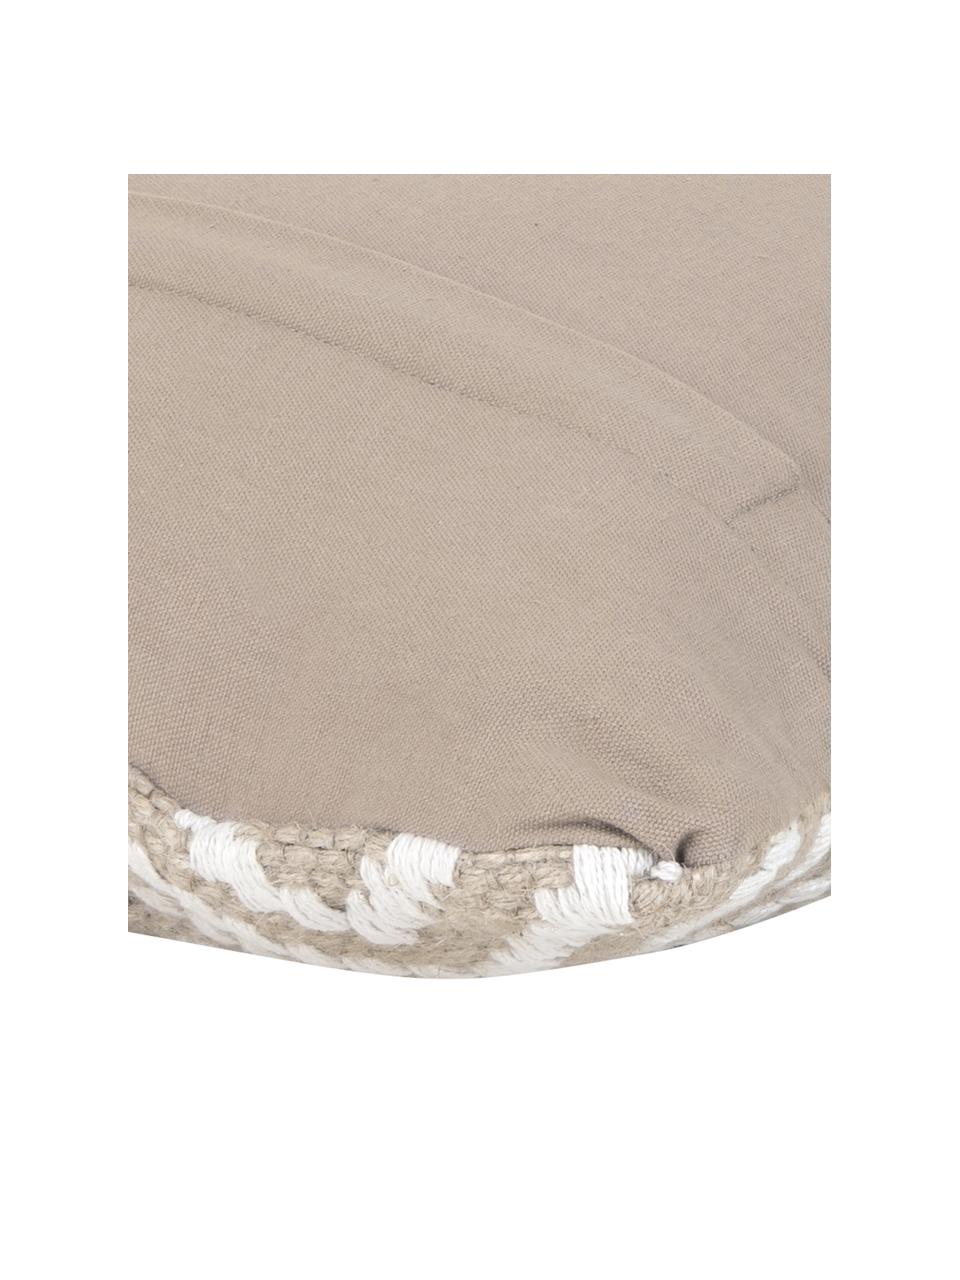 Kussenhoes Diajute van jute/katoenmix, Voorzijde: beige, crèmewit. Achterzijde: lichtbeige, B 45 x L 45 cm